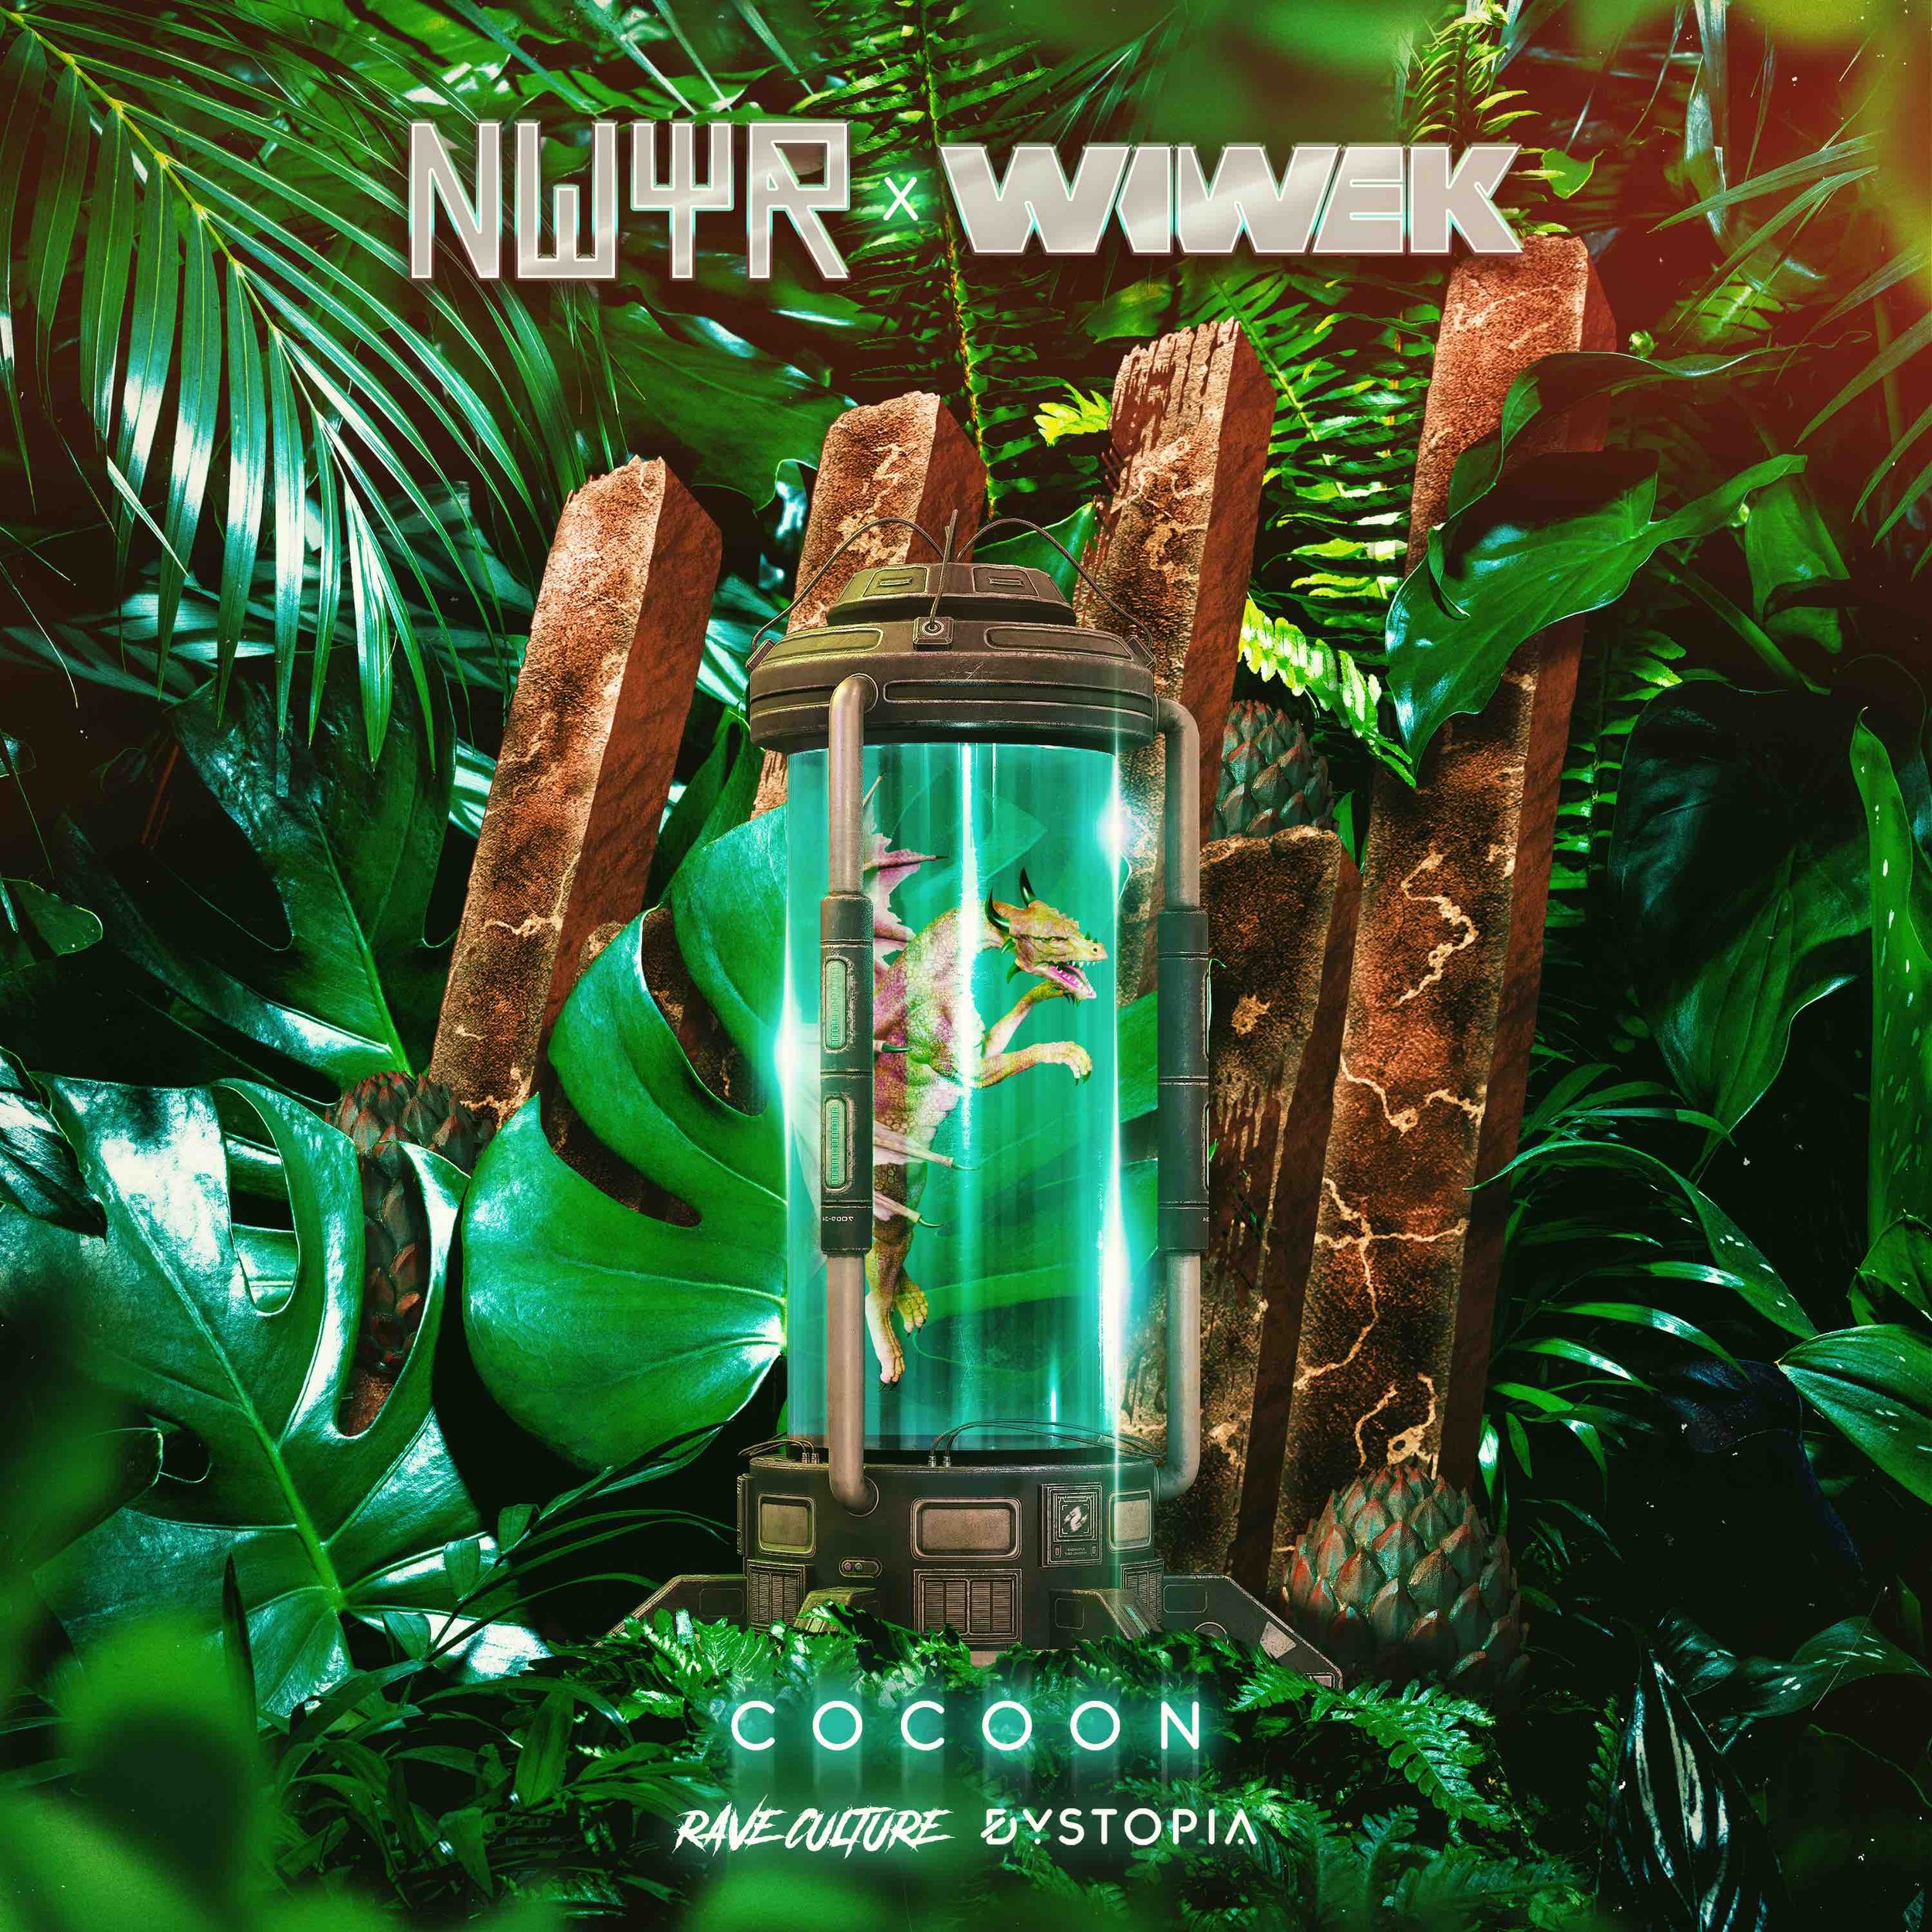 NWYR x Wiwek - Cocoon Official Artwork